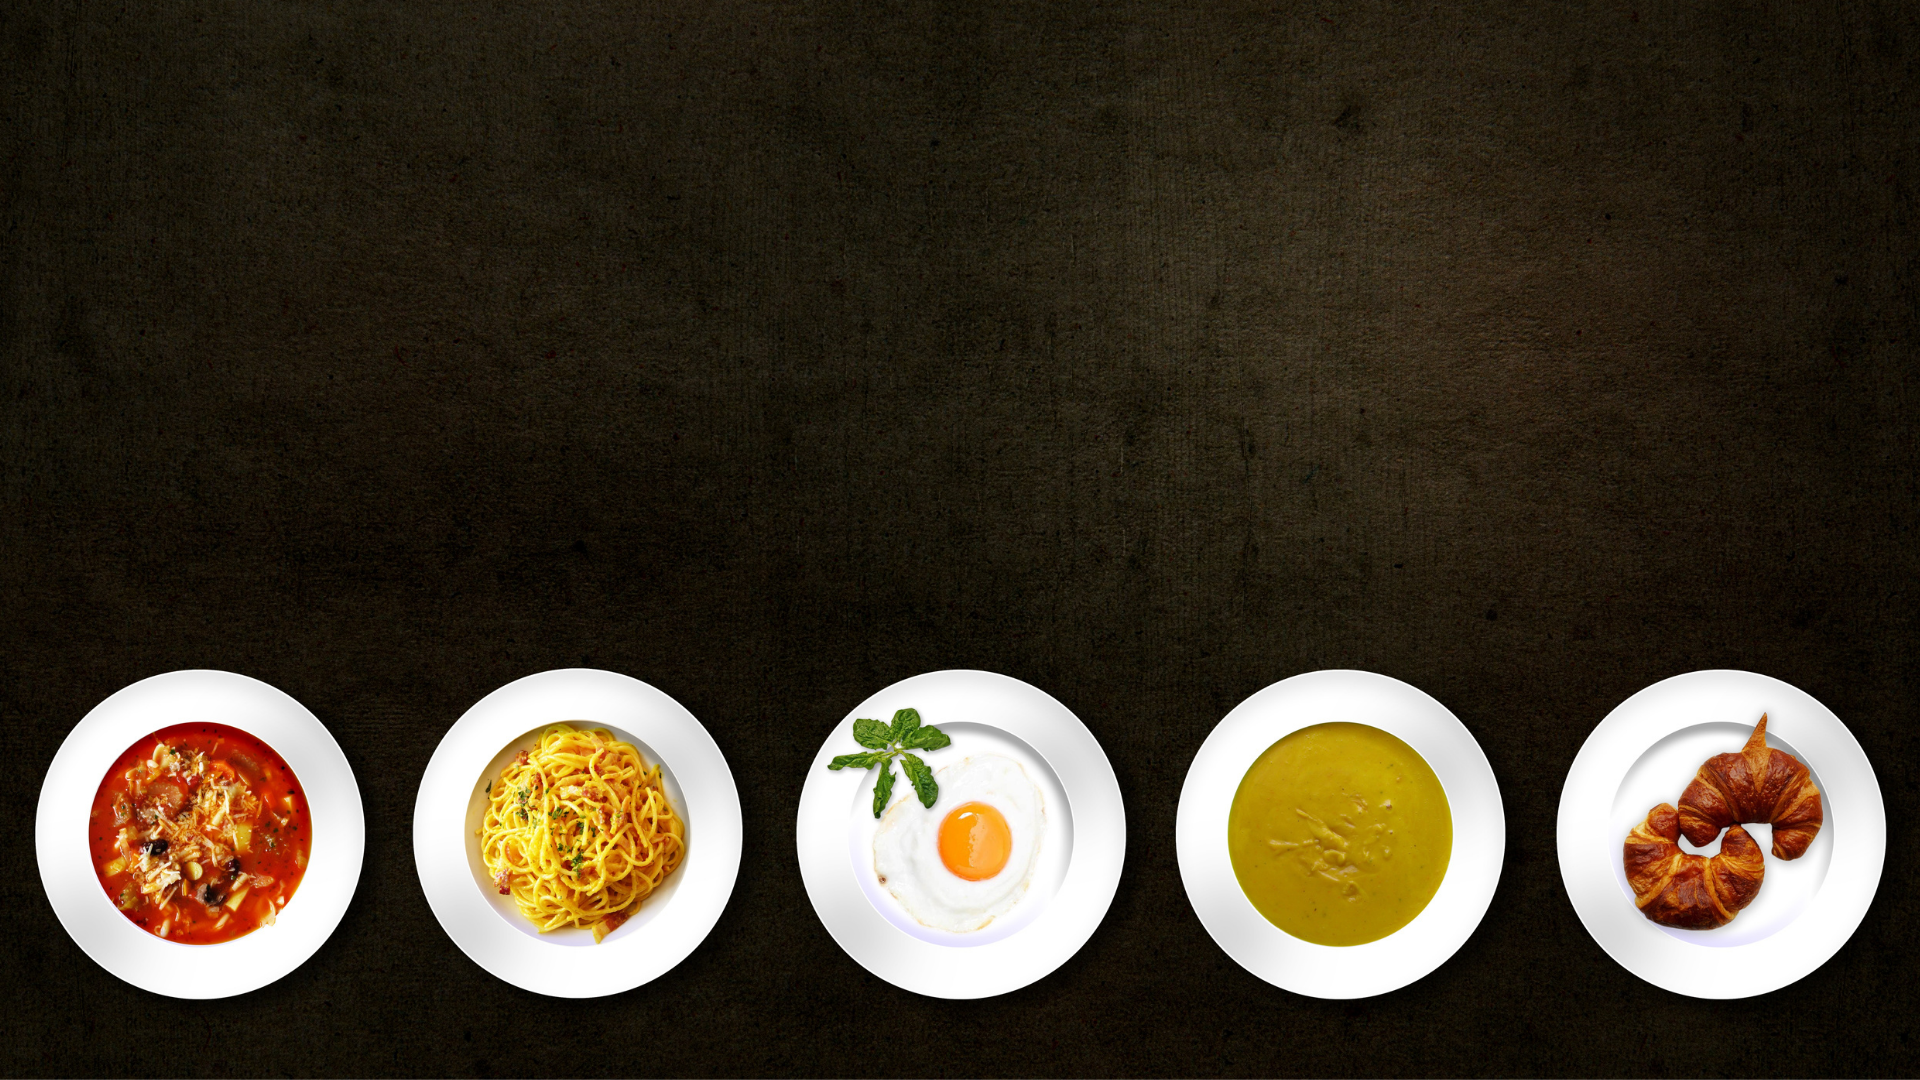 Ketojenik diyet için glikoz içeren yemeklerin tabaktaki halini gösteren bir görsel.